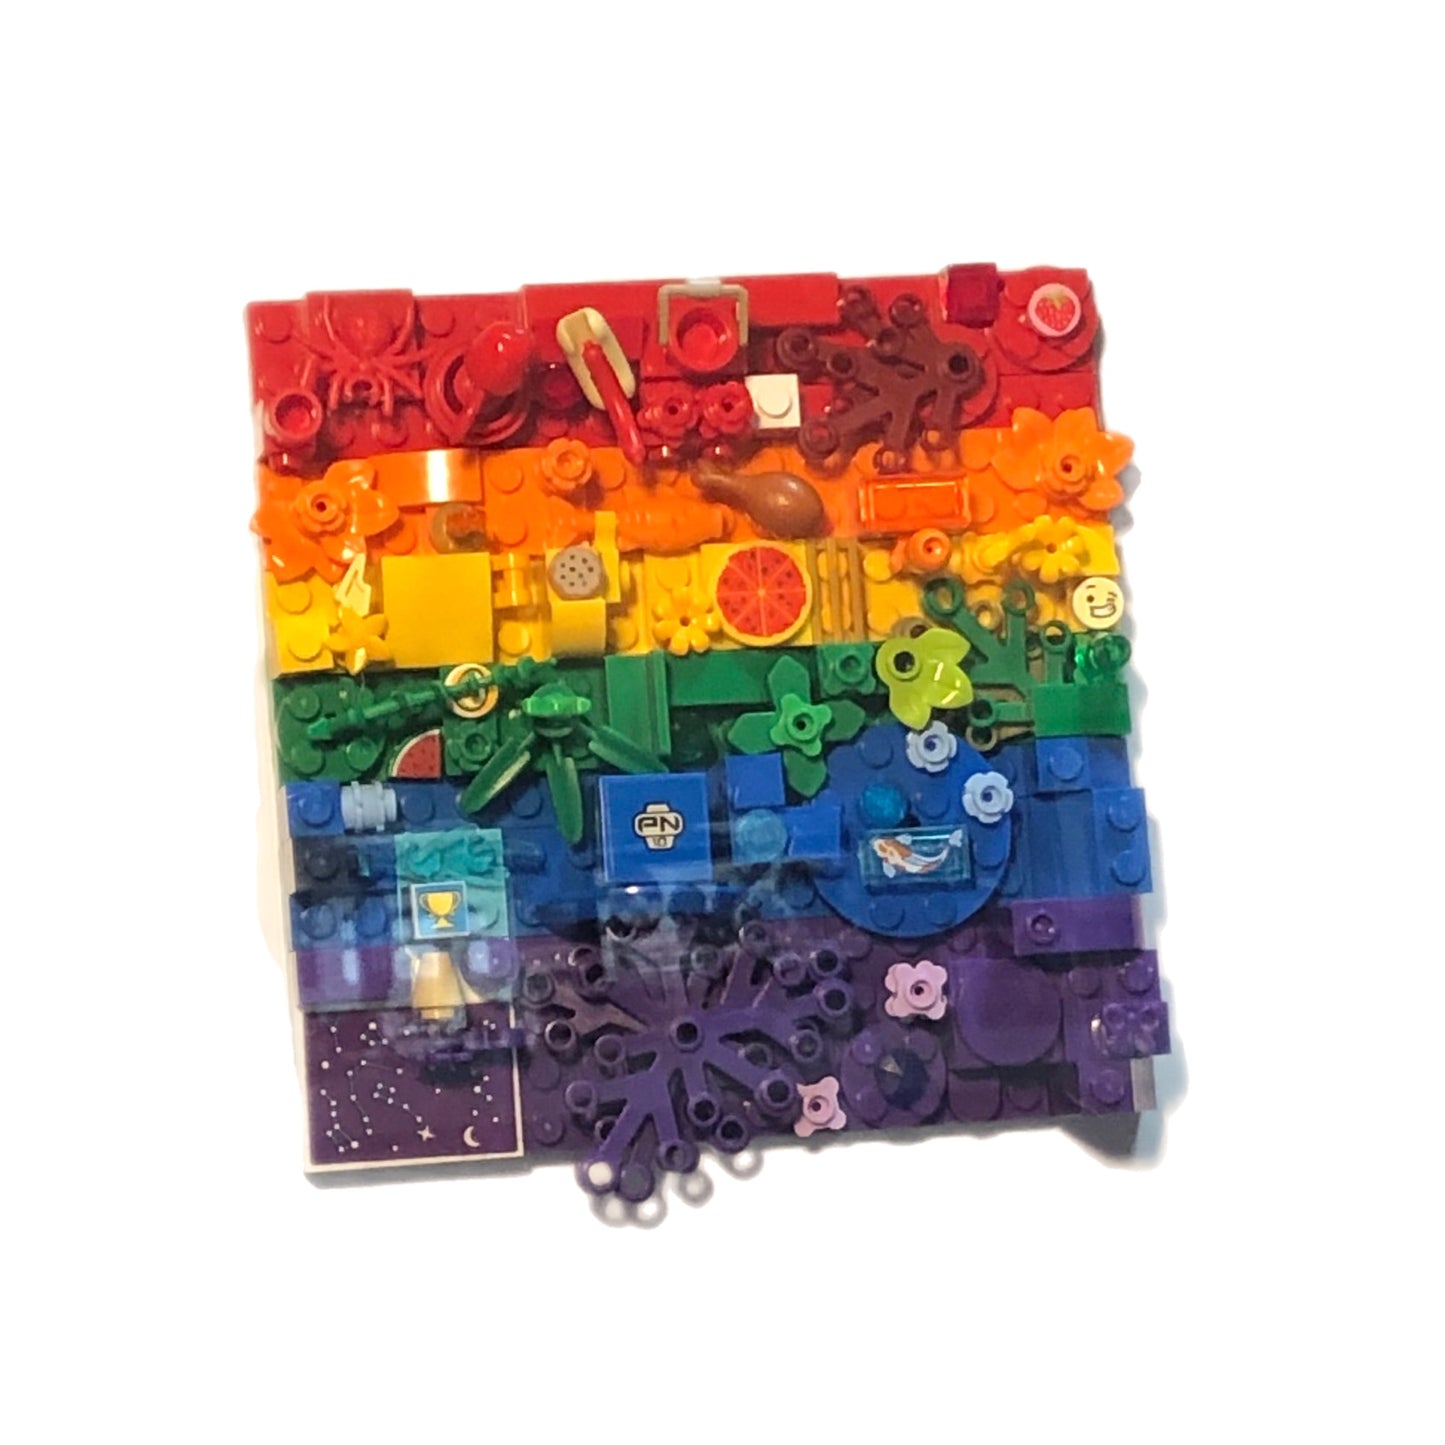 Collage Art- Rainbow Pride Flag